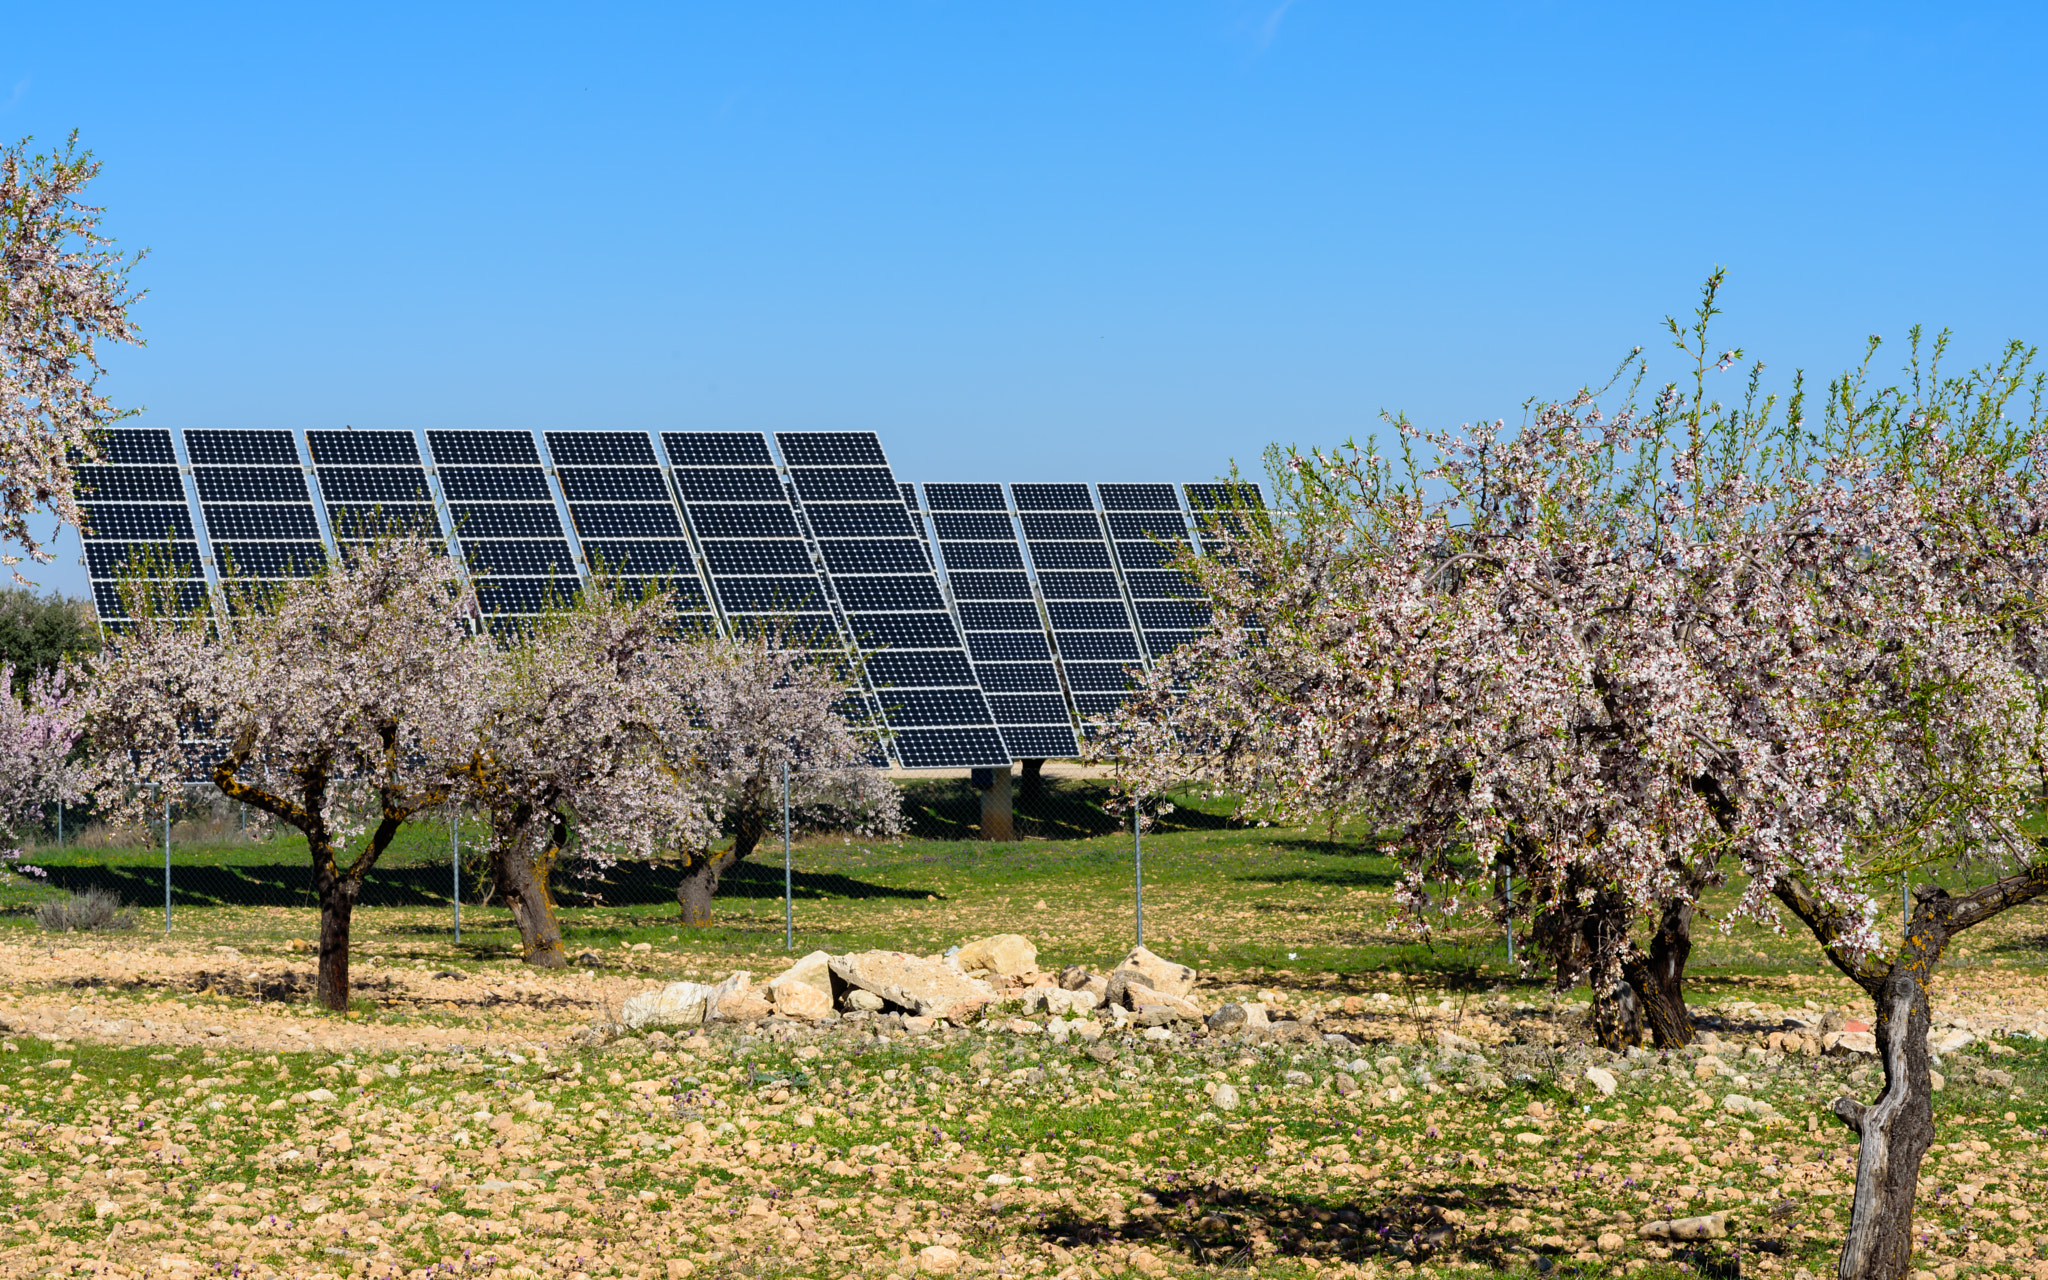 Solar panels in almond field